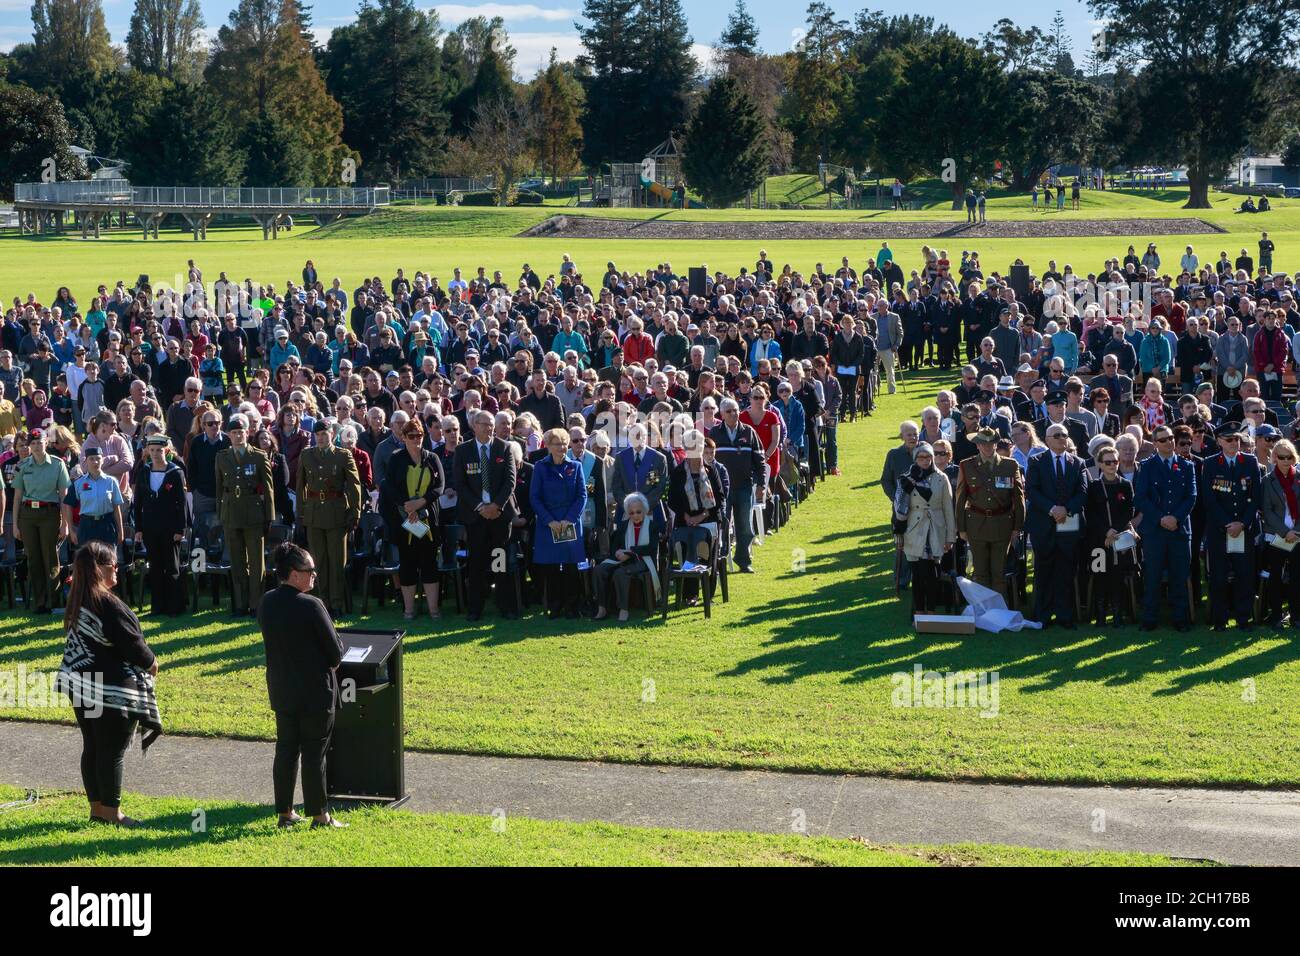 Une foule s'est rassemblée pour les services de jour d'Anzac à Memorial Park, Tauranga, Nouvelle-Zélande. Avril 25 2018 Banque D'Images